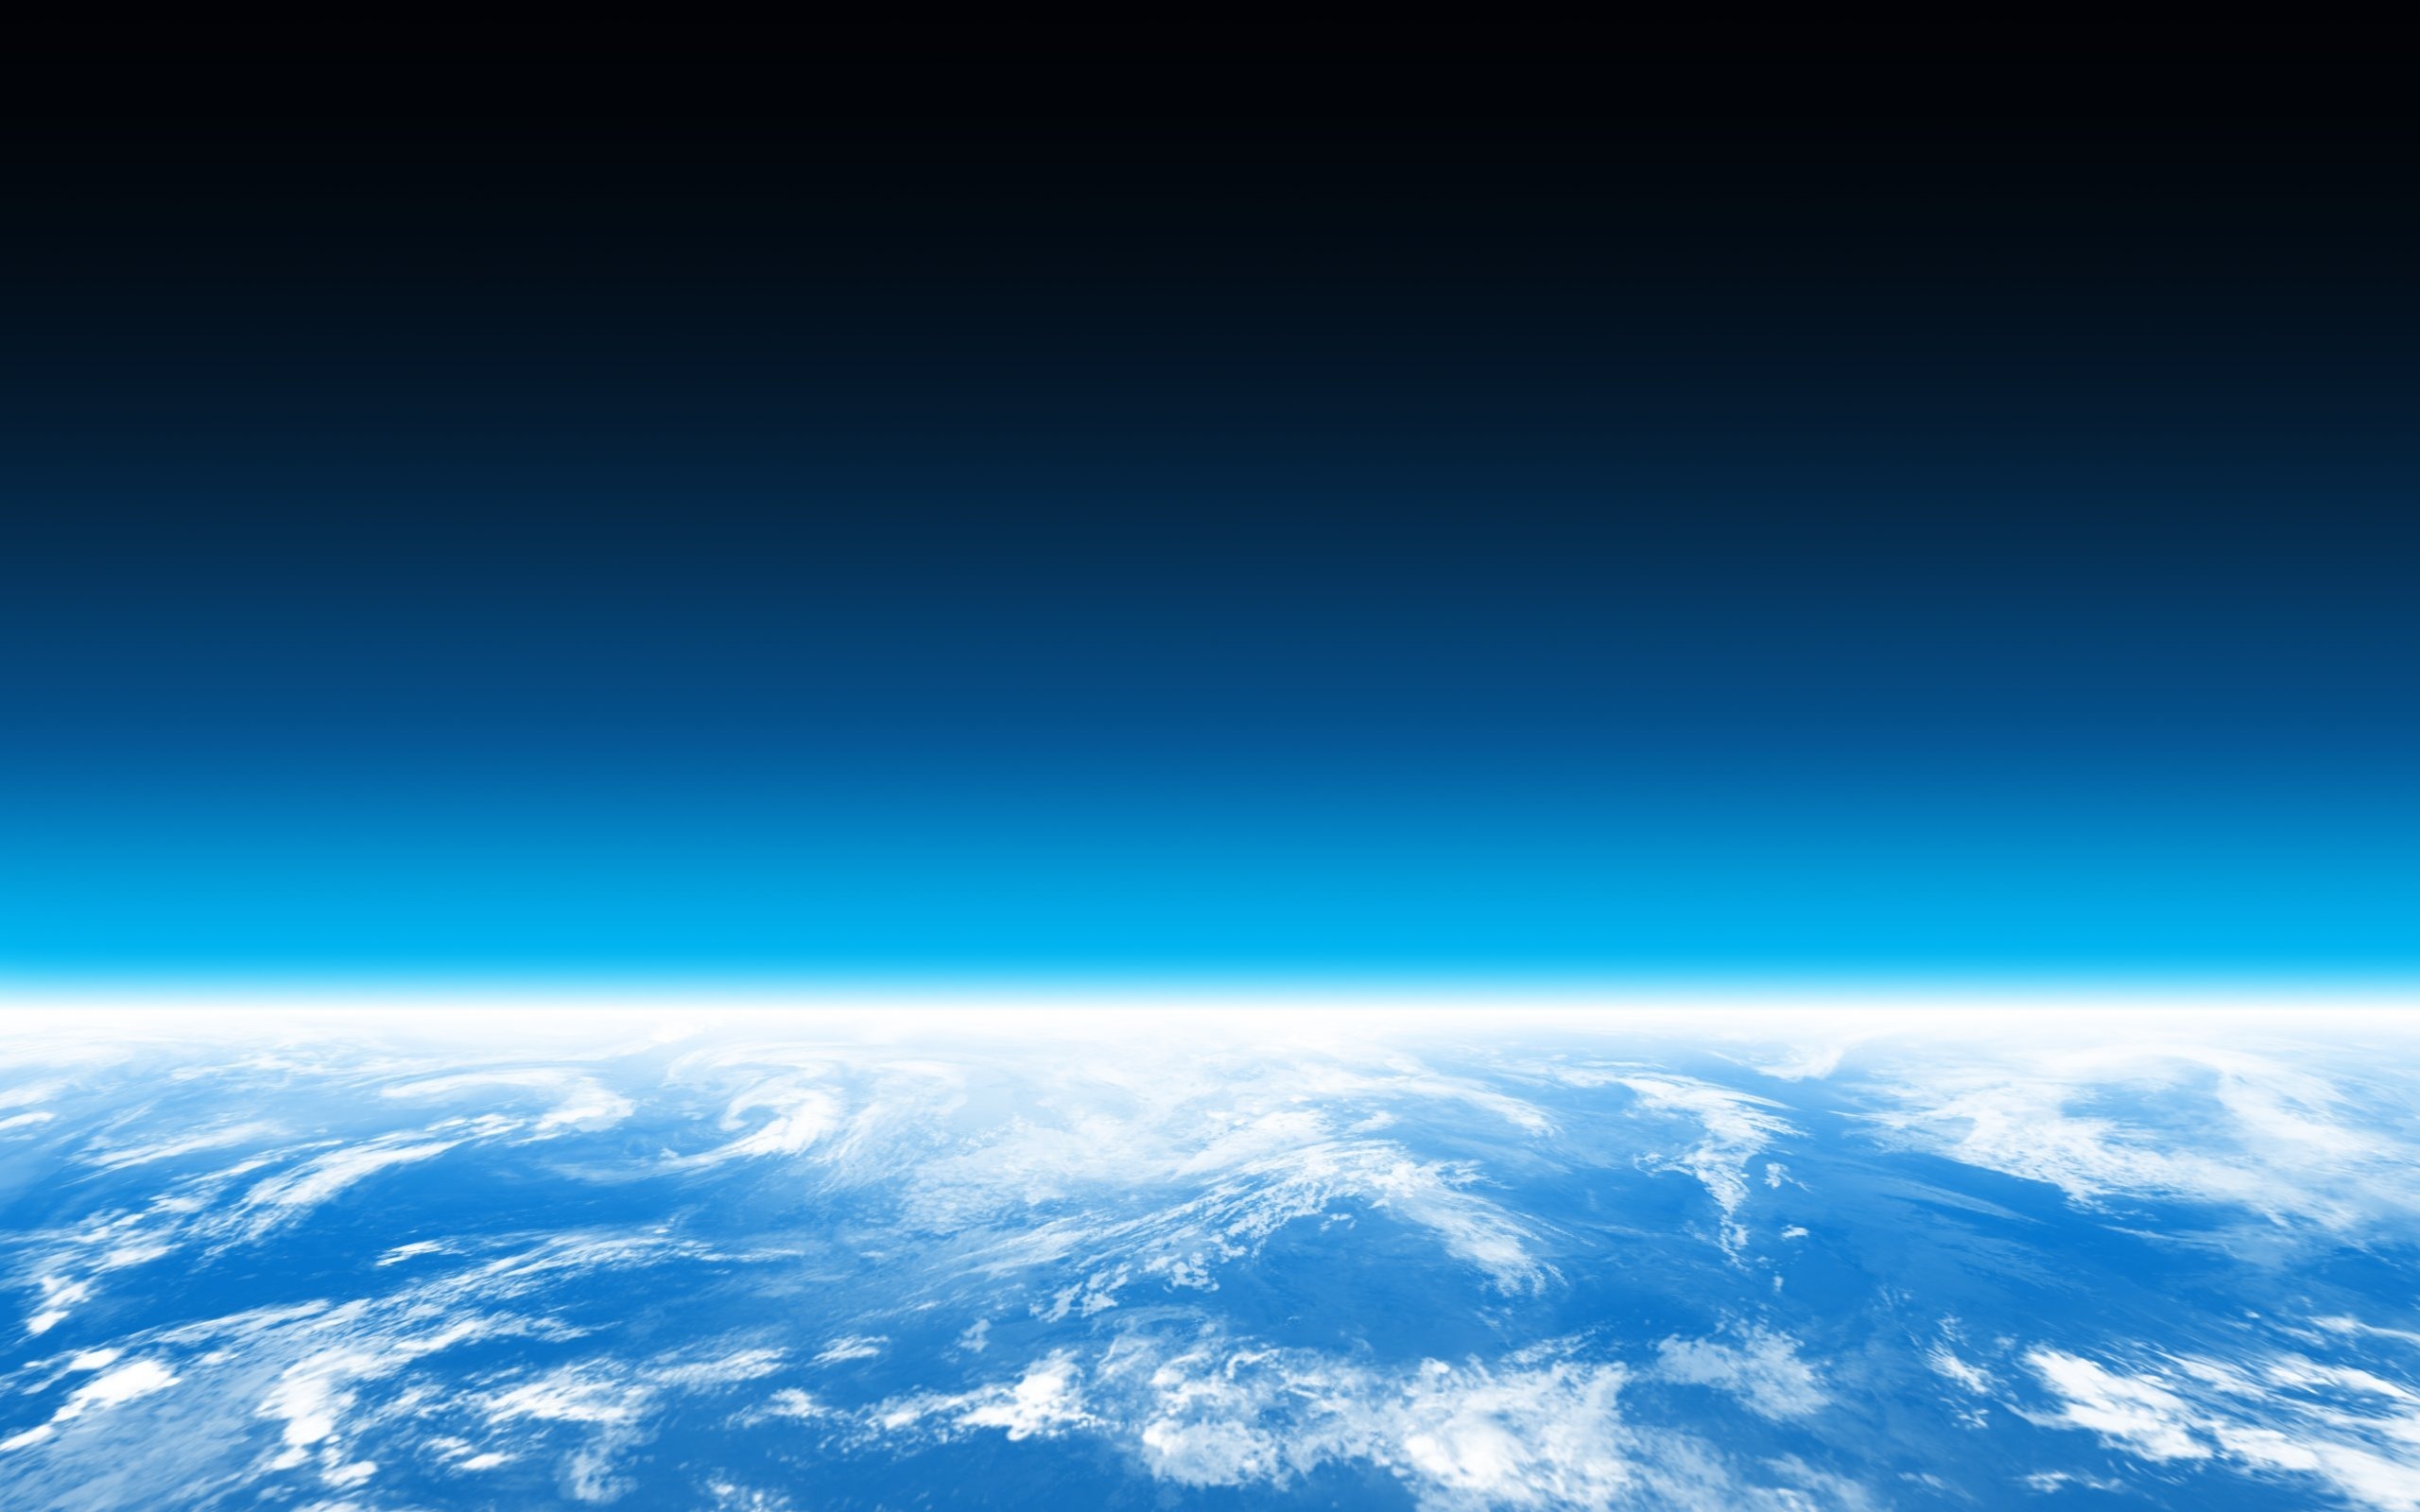 Высота 1024. Космос стратосфера атмосфера. О земле и космосе. Небо космос. Горизонт.